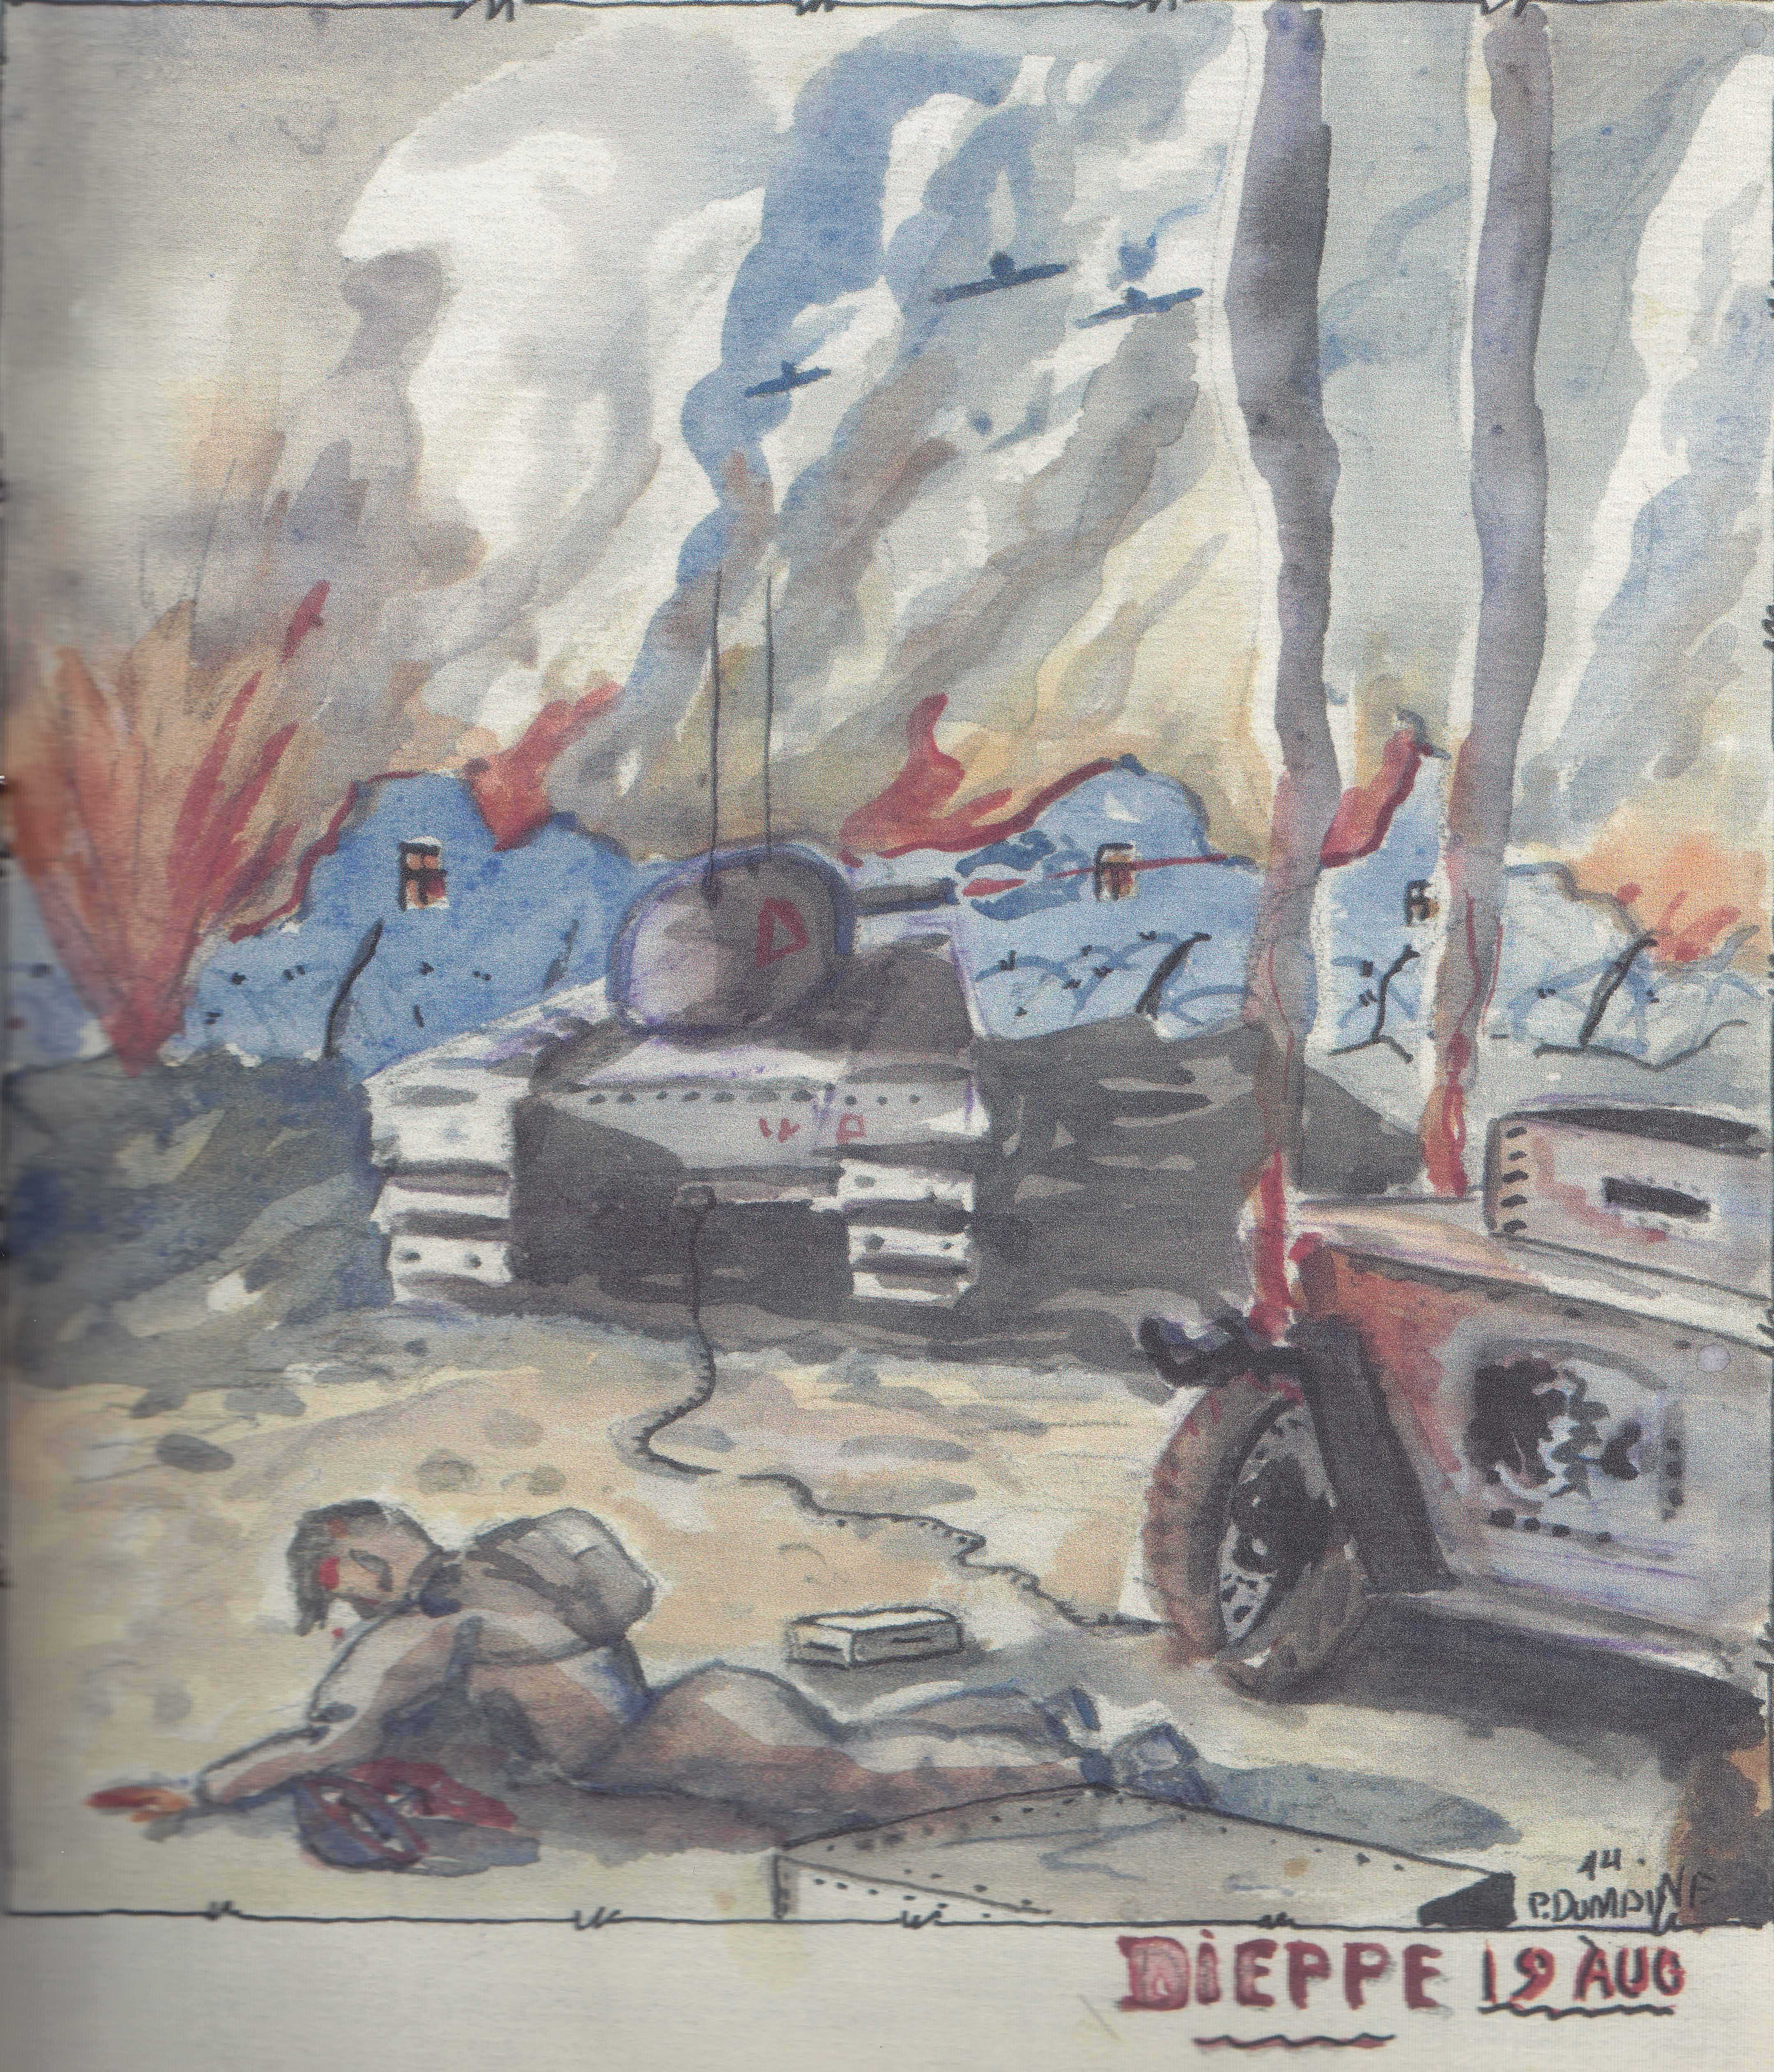 Un croquis en couleur illustre des nuées de fumée au loin, des explositions, des véhicules militaires abandonnés, dont des chars d’assaut, et un soldat ensanglanté reposant à l’avant-plan. Le croquis est daté et signé « P. Dumaine, Dieppe, 19 août ».